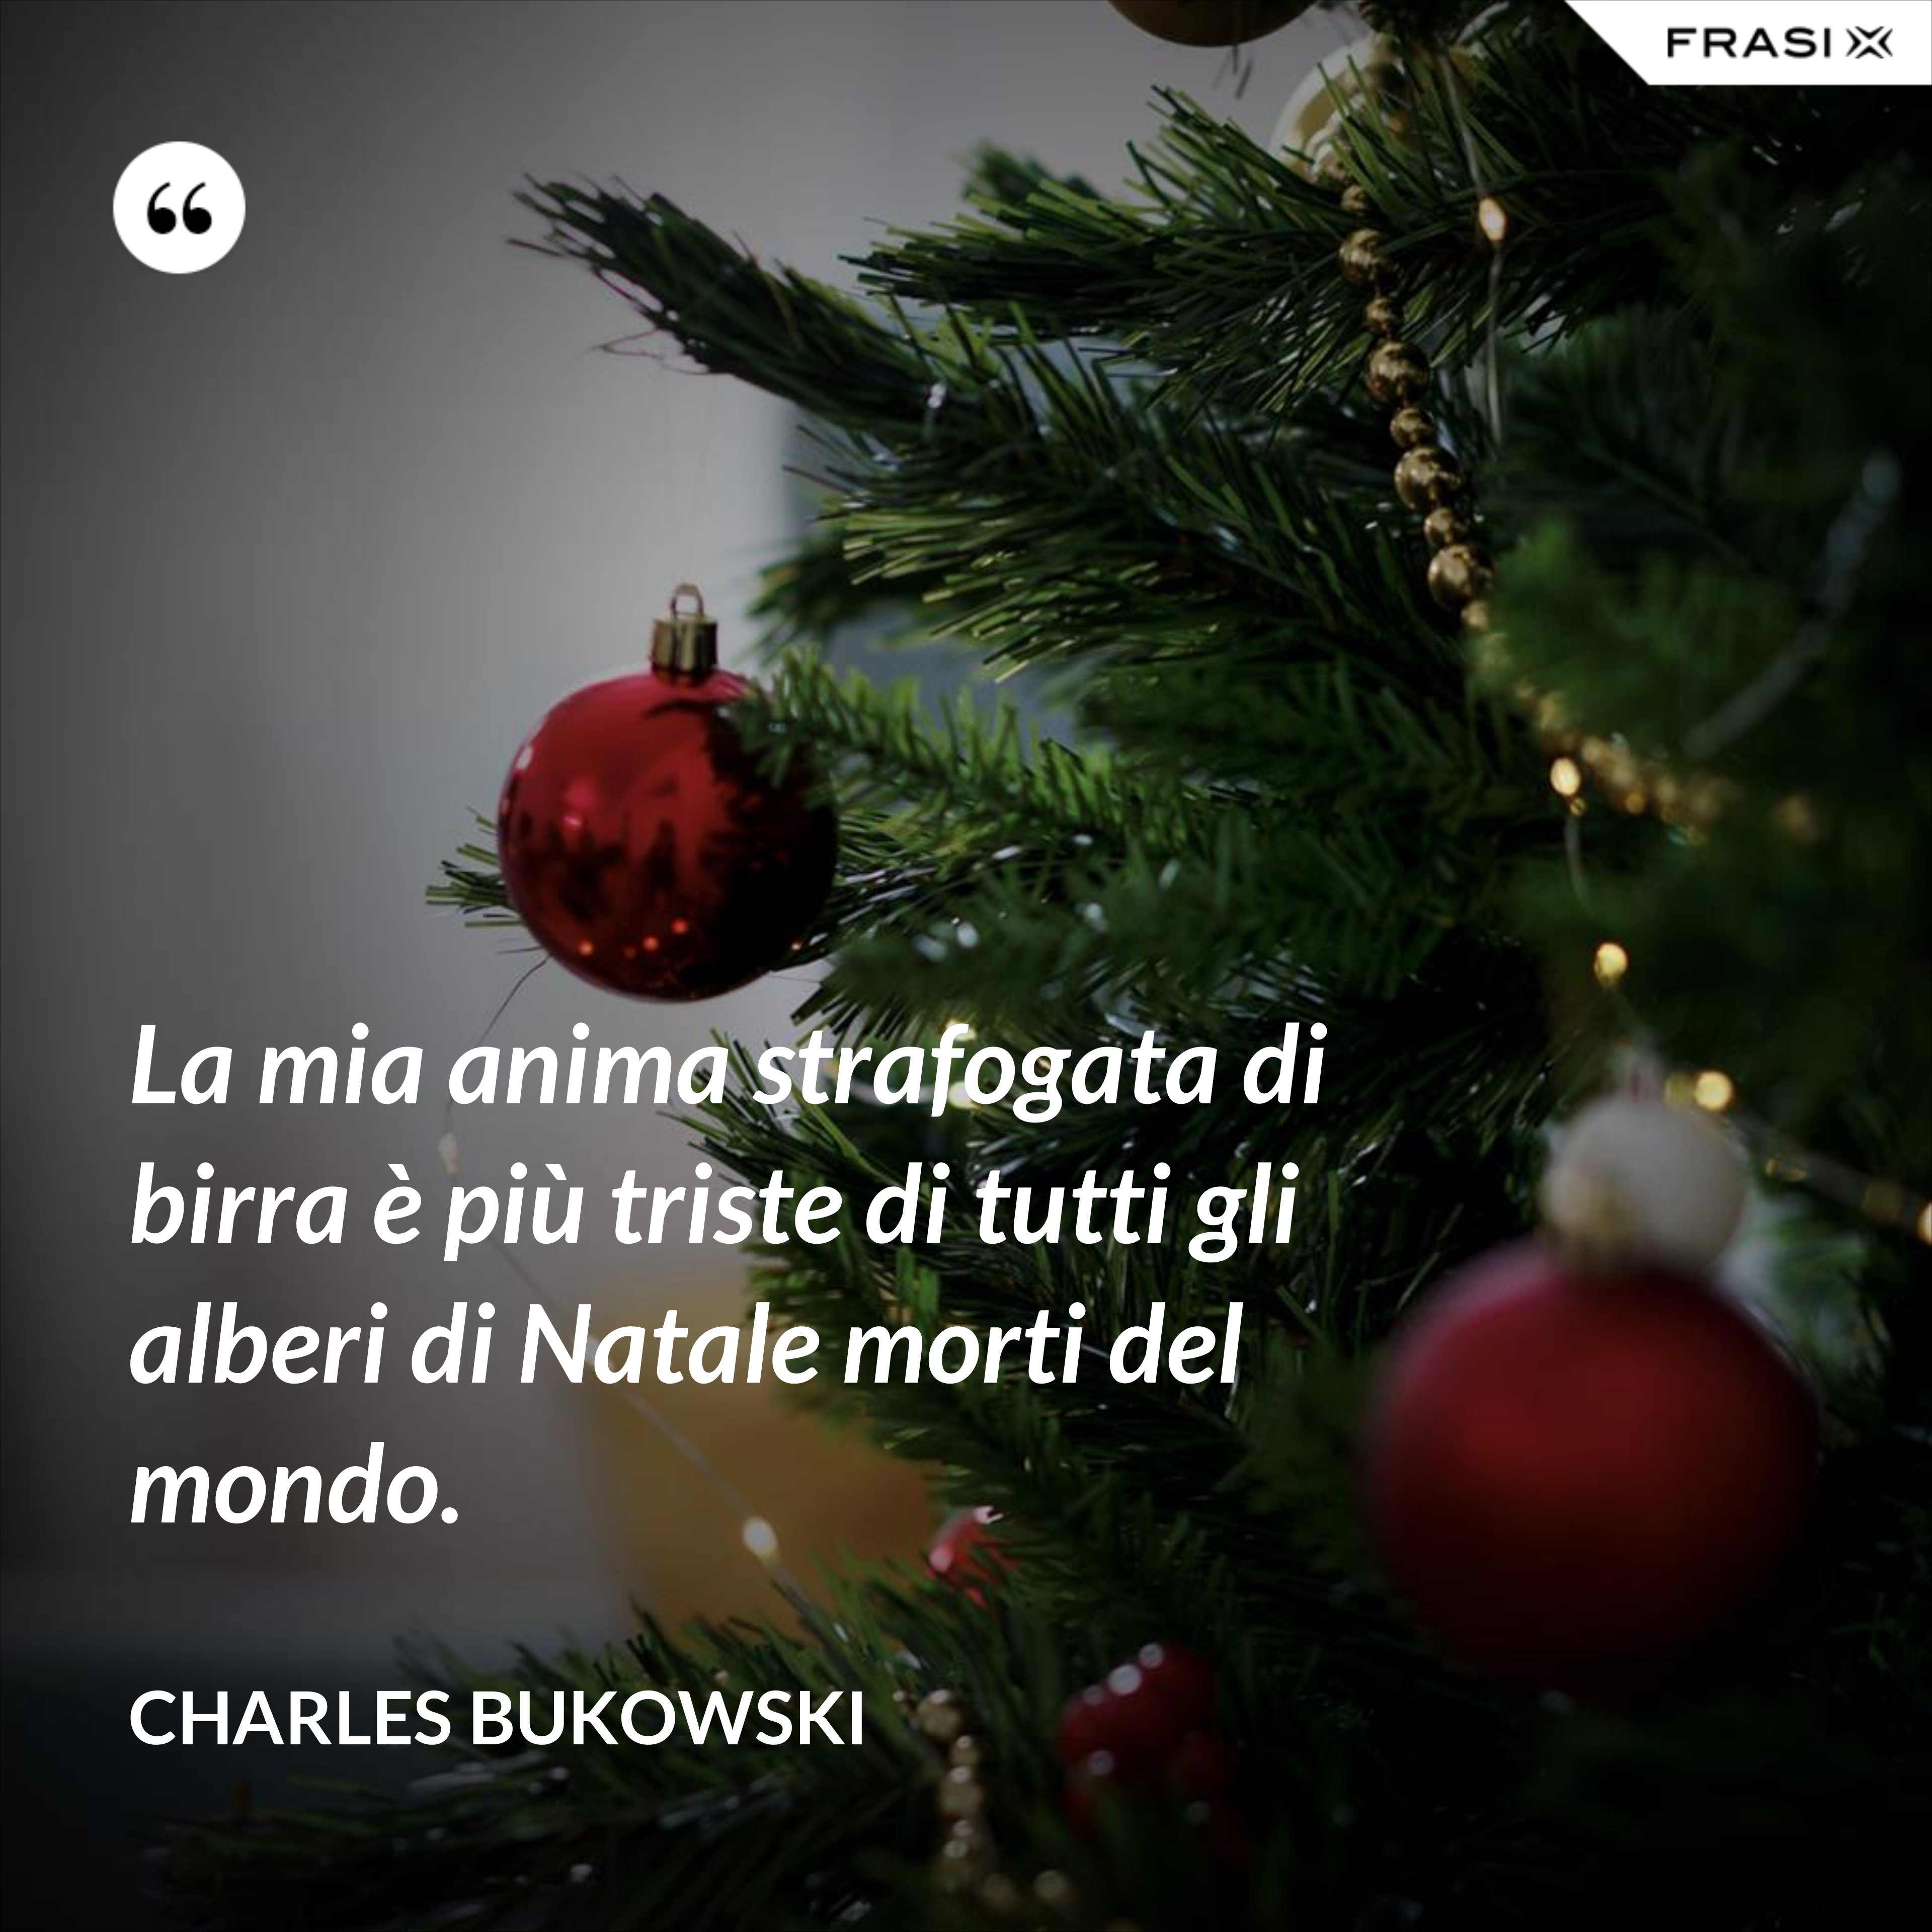 La mia anima strafogata di birra è più triste di tutti gli alberi di Natale morti del mondo. - Charles Bukowski